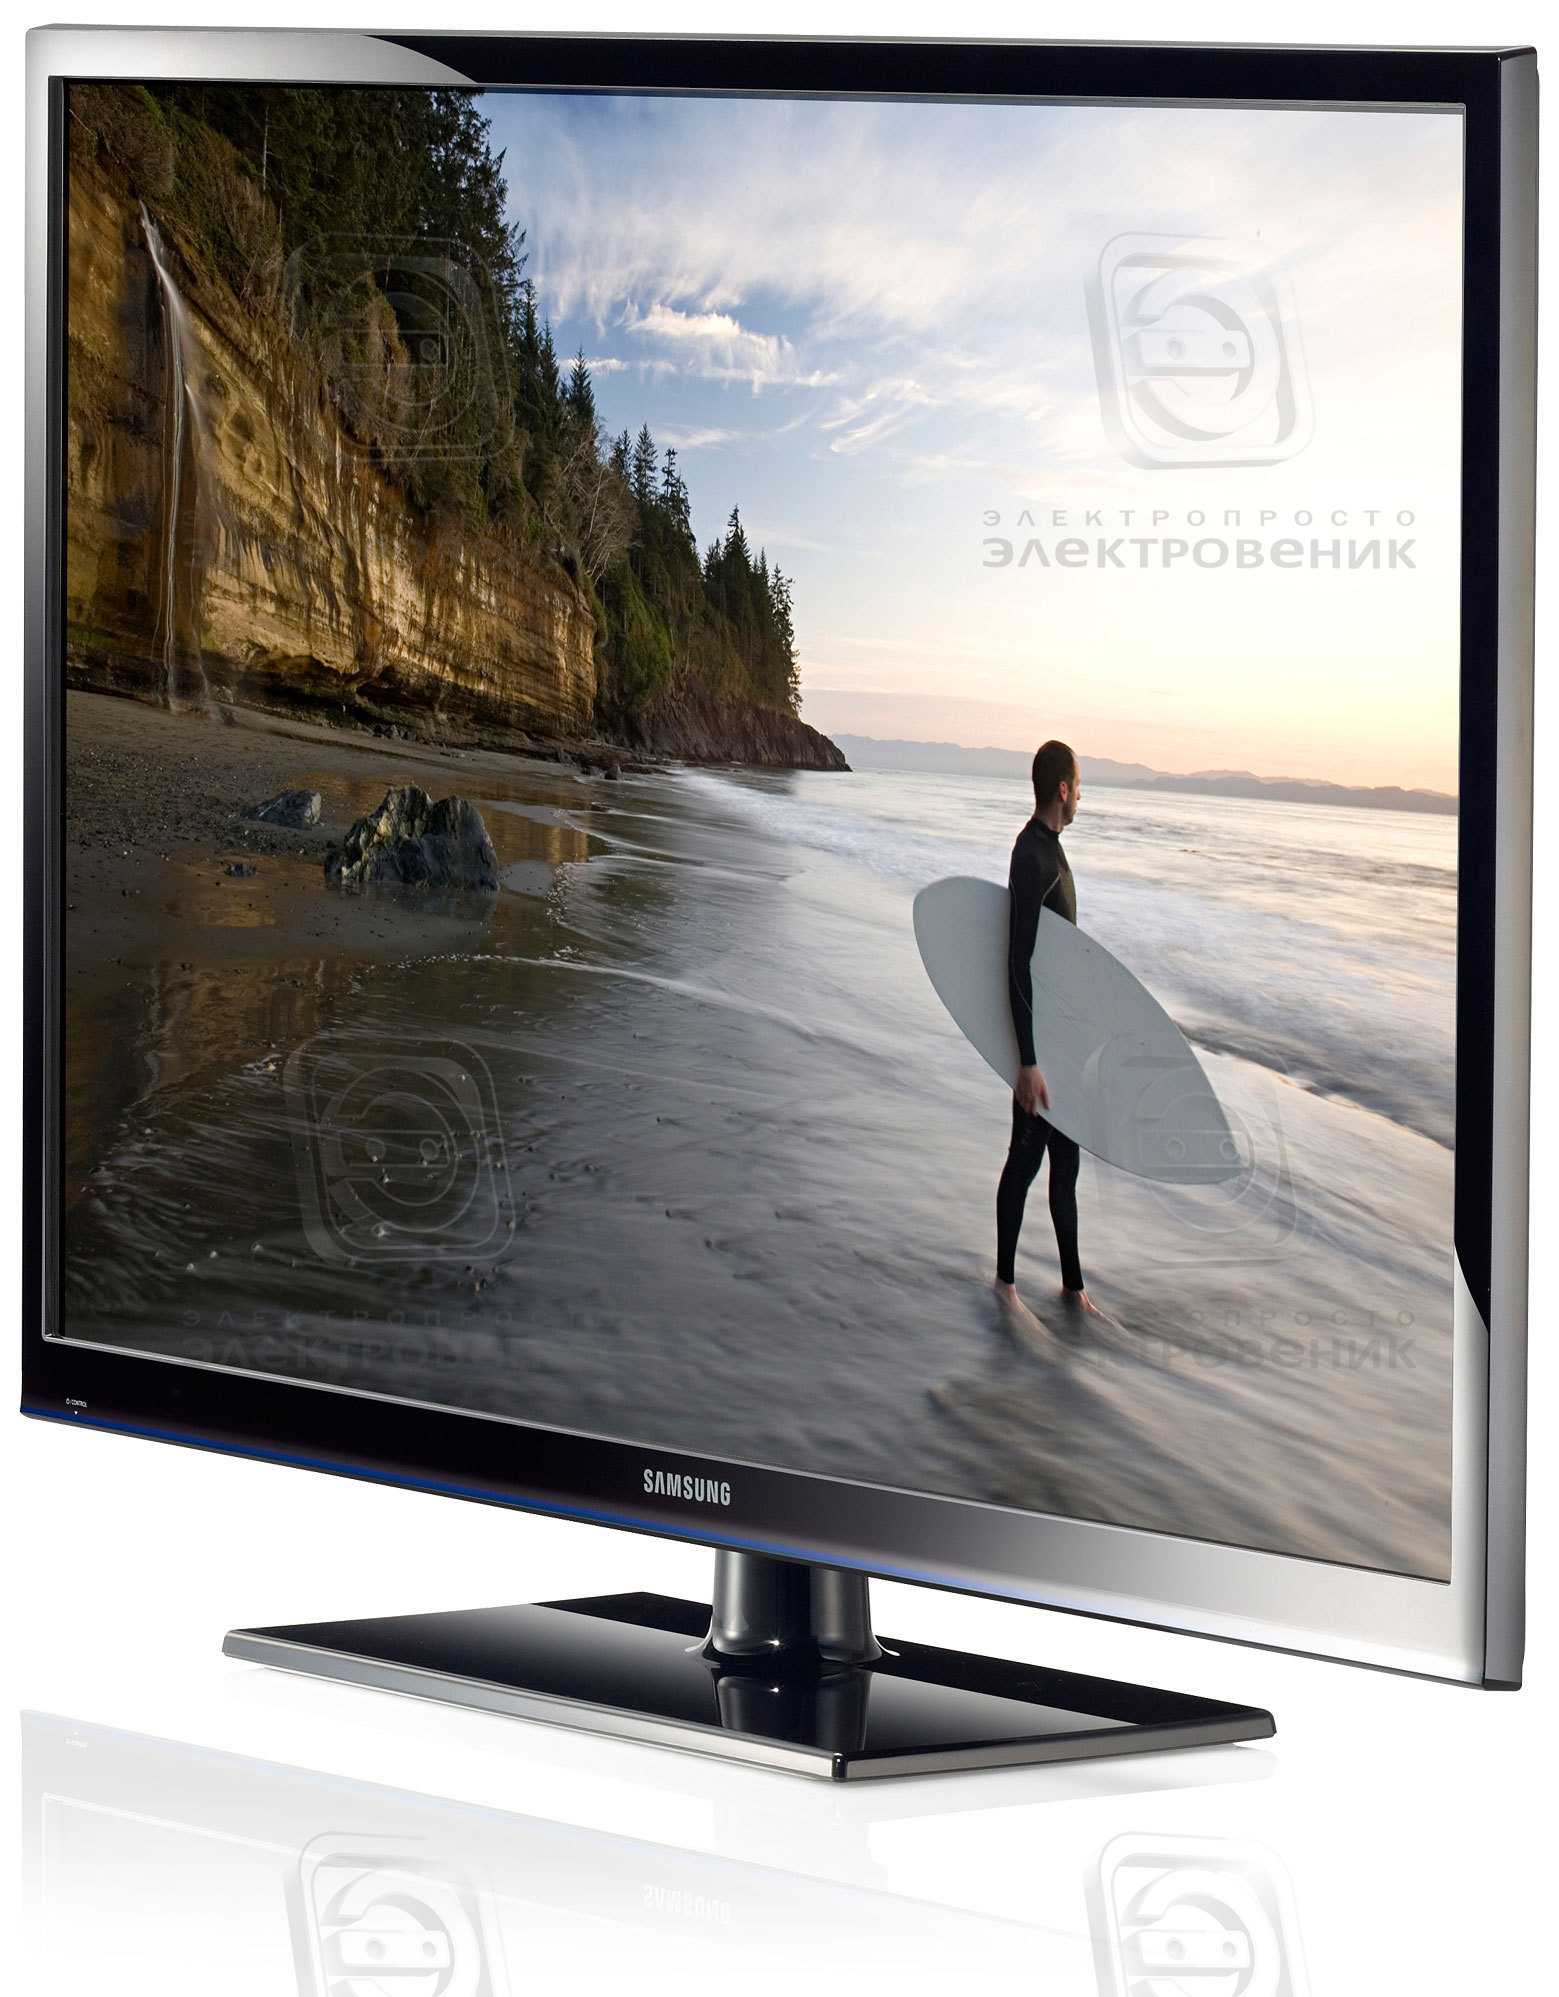 Samsung ps60e6507eu - купить , скидки, цена, отзывы, обзор, характеристики - телевизоры